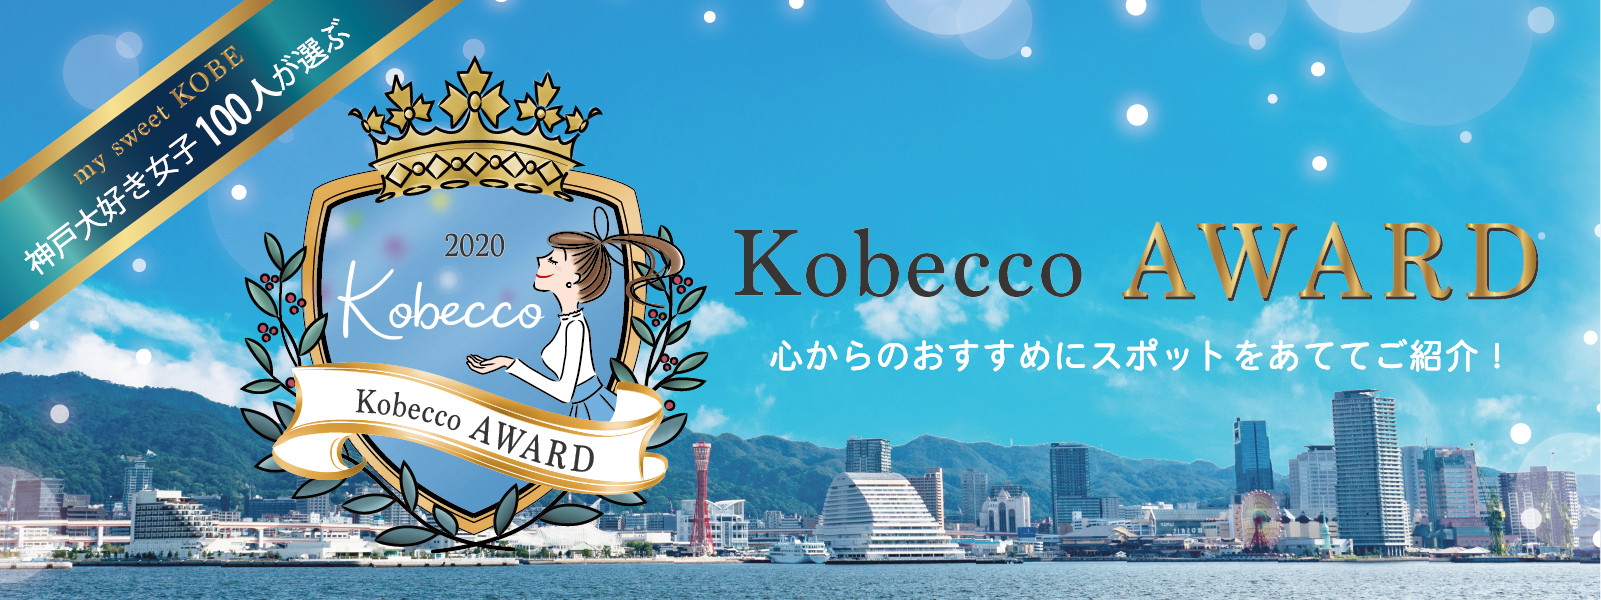 Kobecco award banner